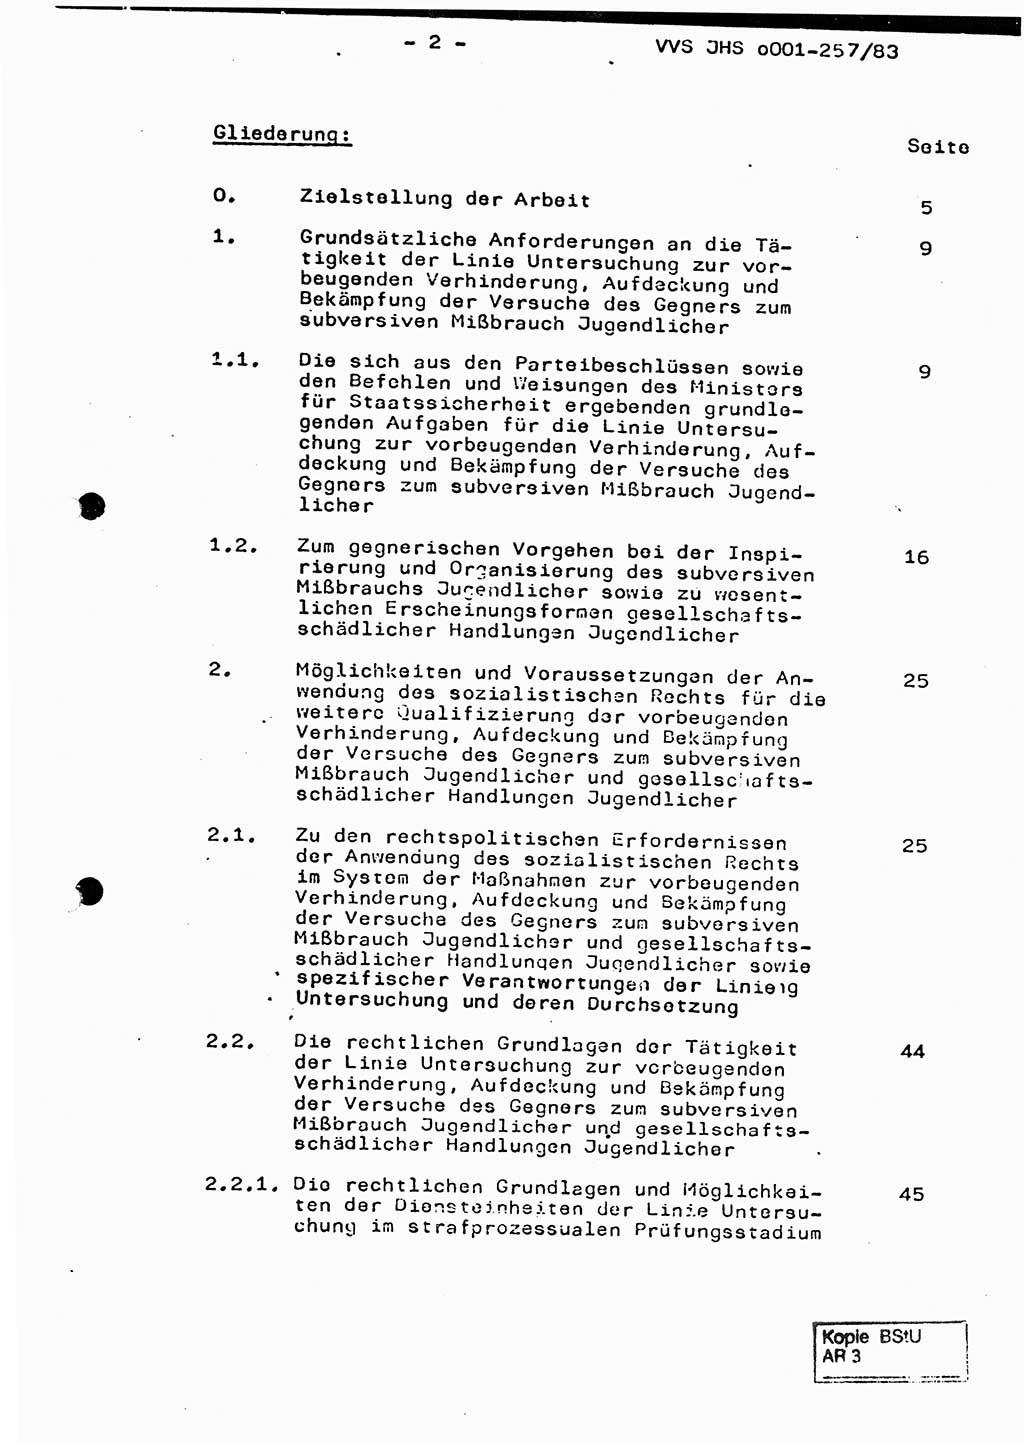 Dissertation, Oberst Helmut Lubas (BV Mdg.), Oberstleutnant Manfred Eschberger (HA IX), Oberleutnant Hans-Jürgen Ludwig (JHS), Ministerium für Staatssicherheit (MfS) [Deutsche Demokratische Republik (DDR)], Juristische Hochschule (JHS), Vertrauliche Verschlußsache (VVS) o001-257/83, Potsdam 1983, Seite 2 (Diss. MfS DDR JHS VVS o001-257/83 1983, S. 2)